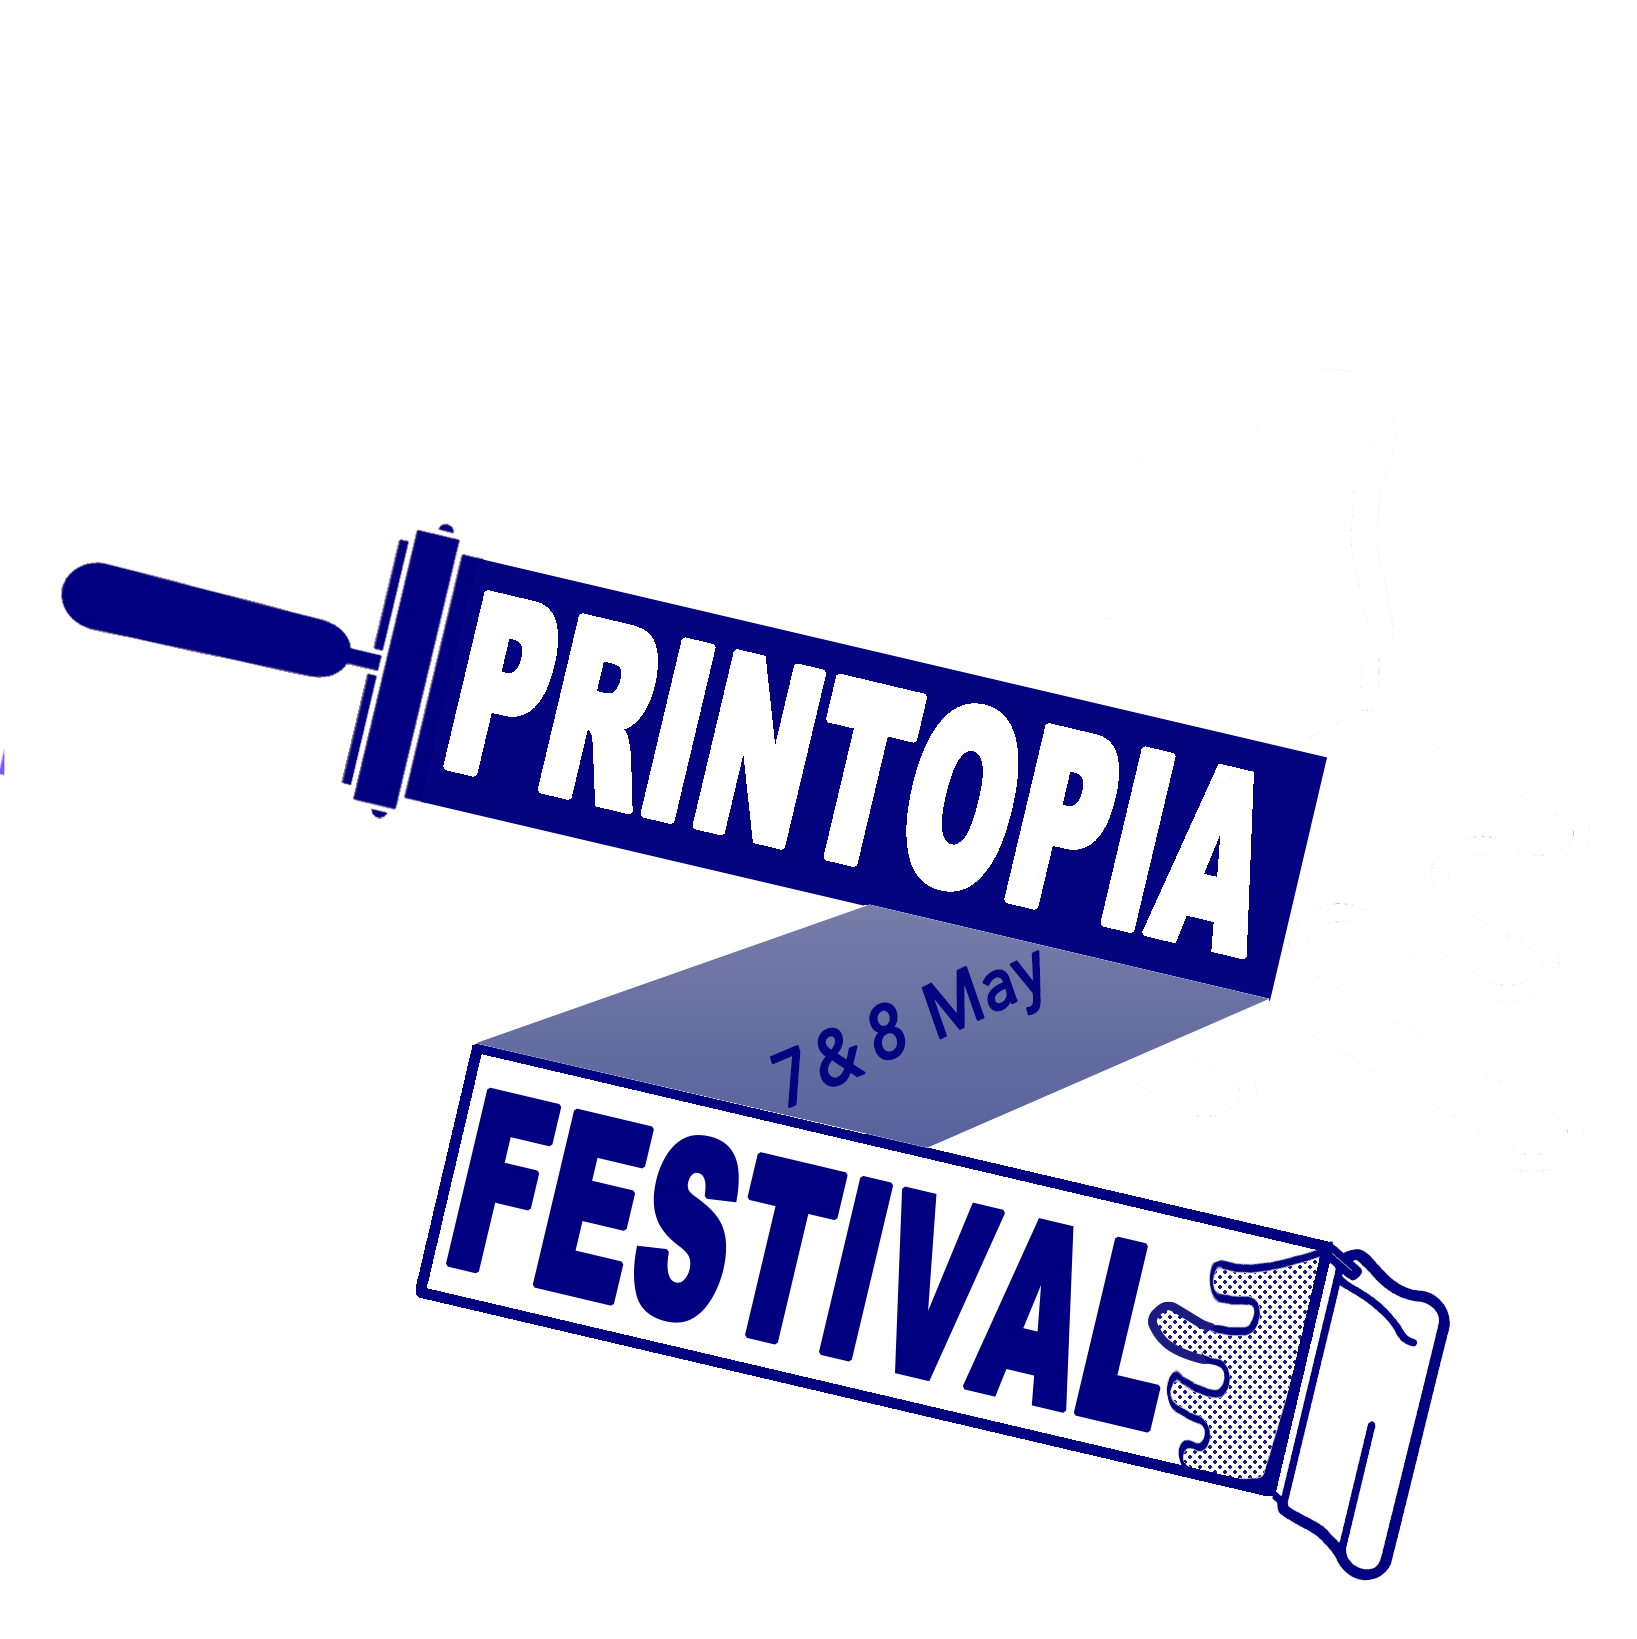 Festival of Original Prints     